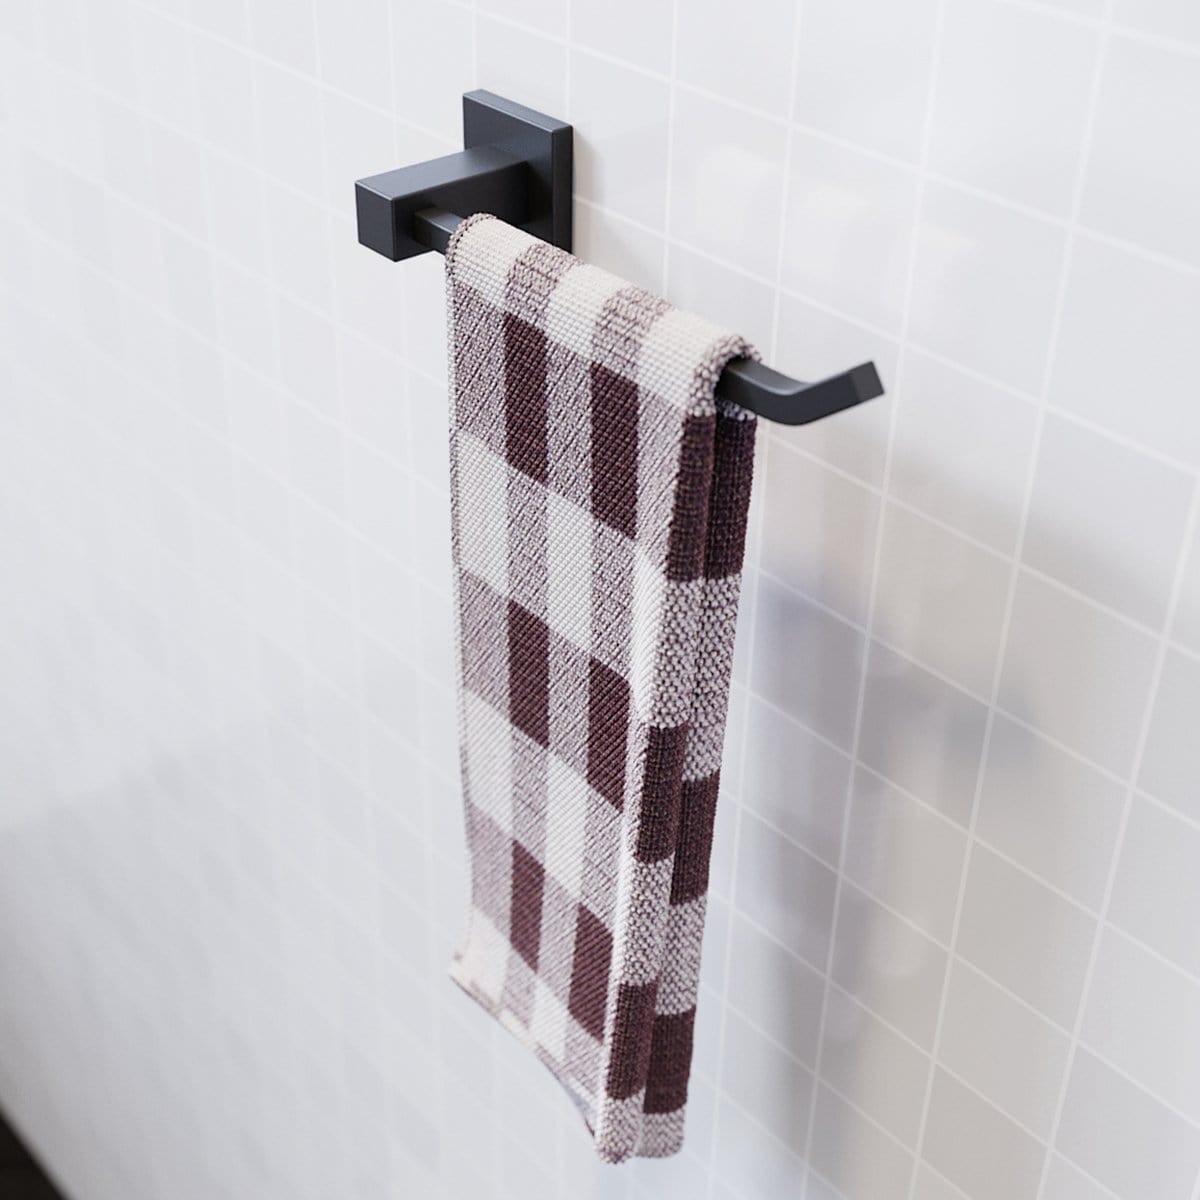 Towel Rail Bathroom Towel Rack Wall Mounted Stainless Steel Black - Elegantshowers